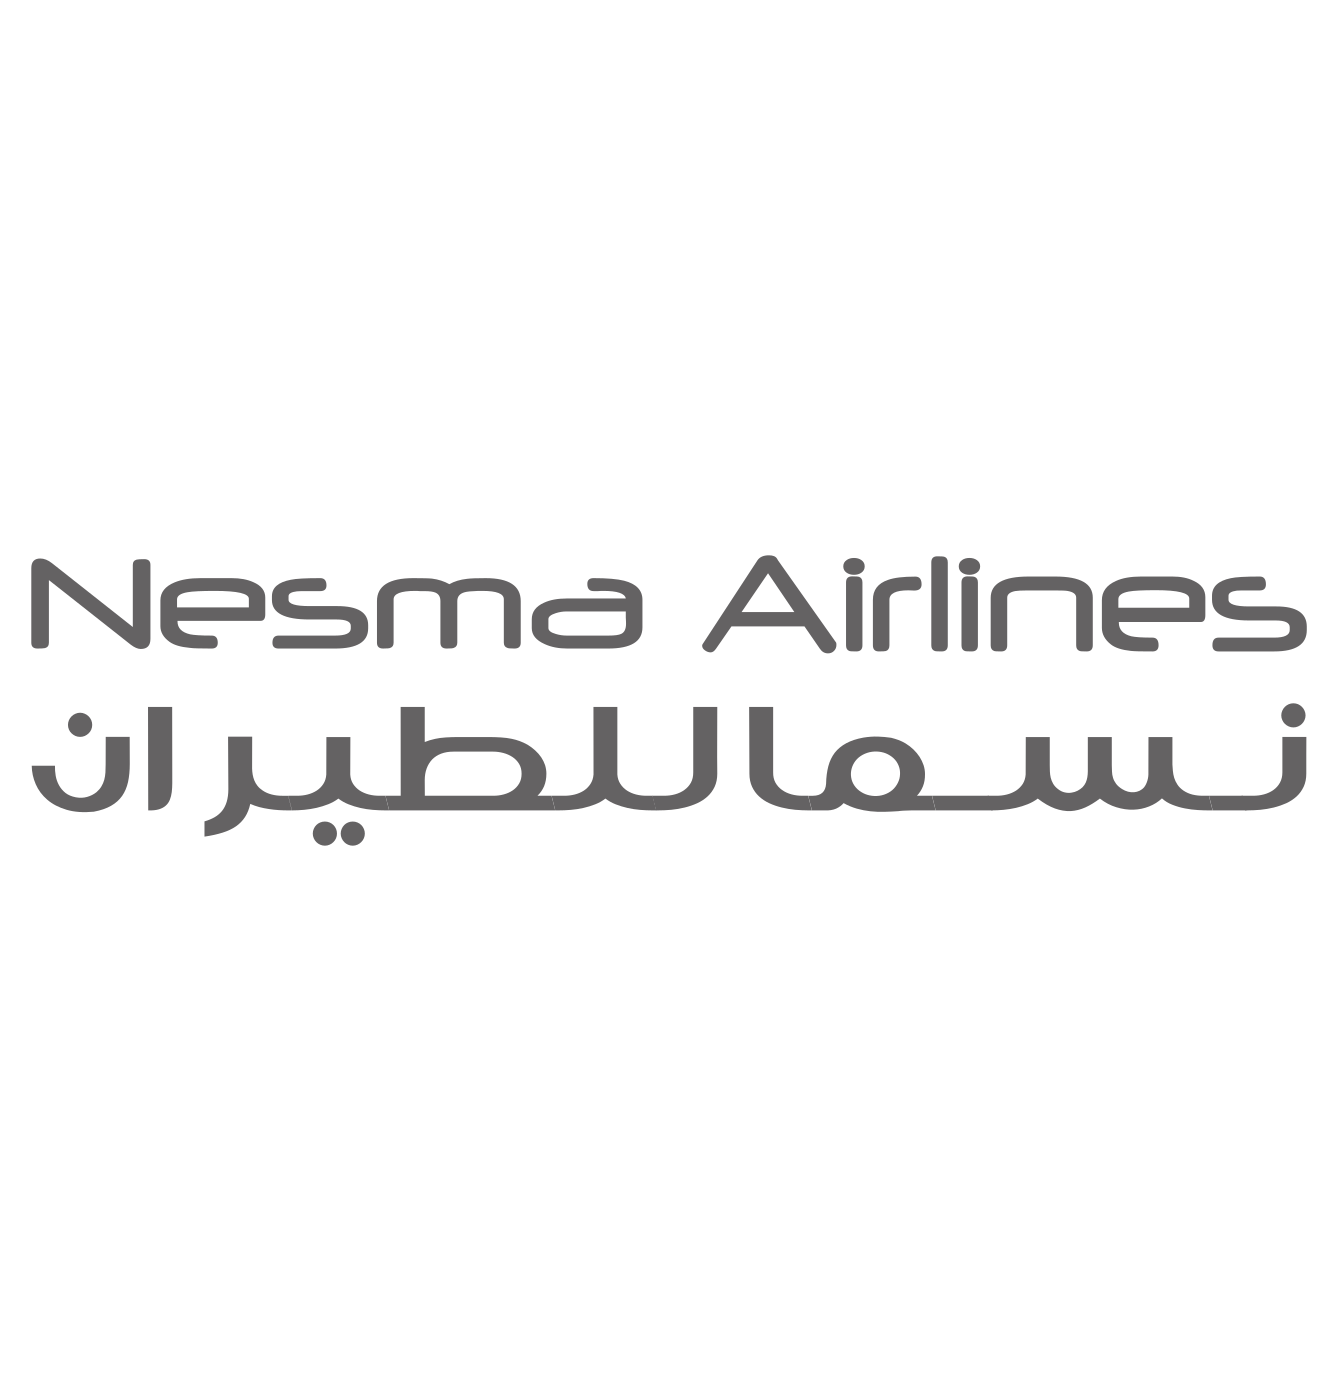 Несма одежда. Nesma логотип. Nesma Airlines.